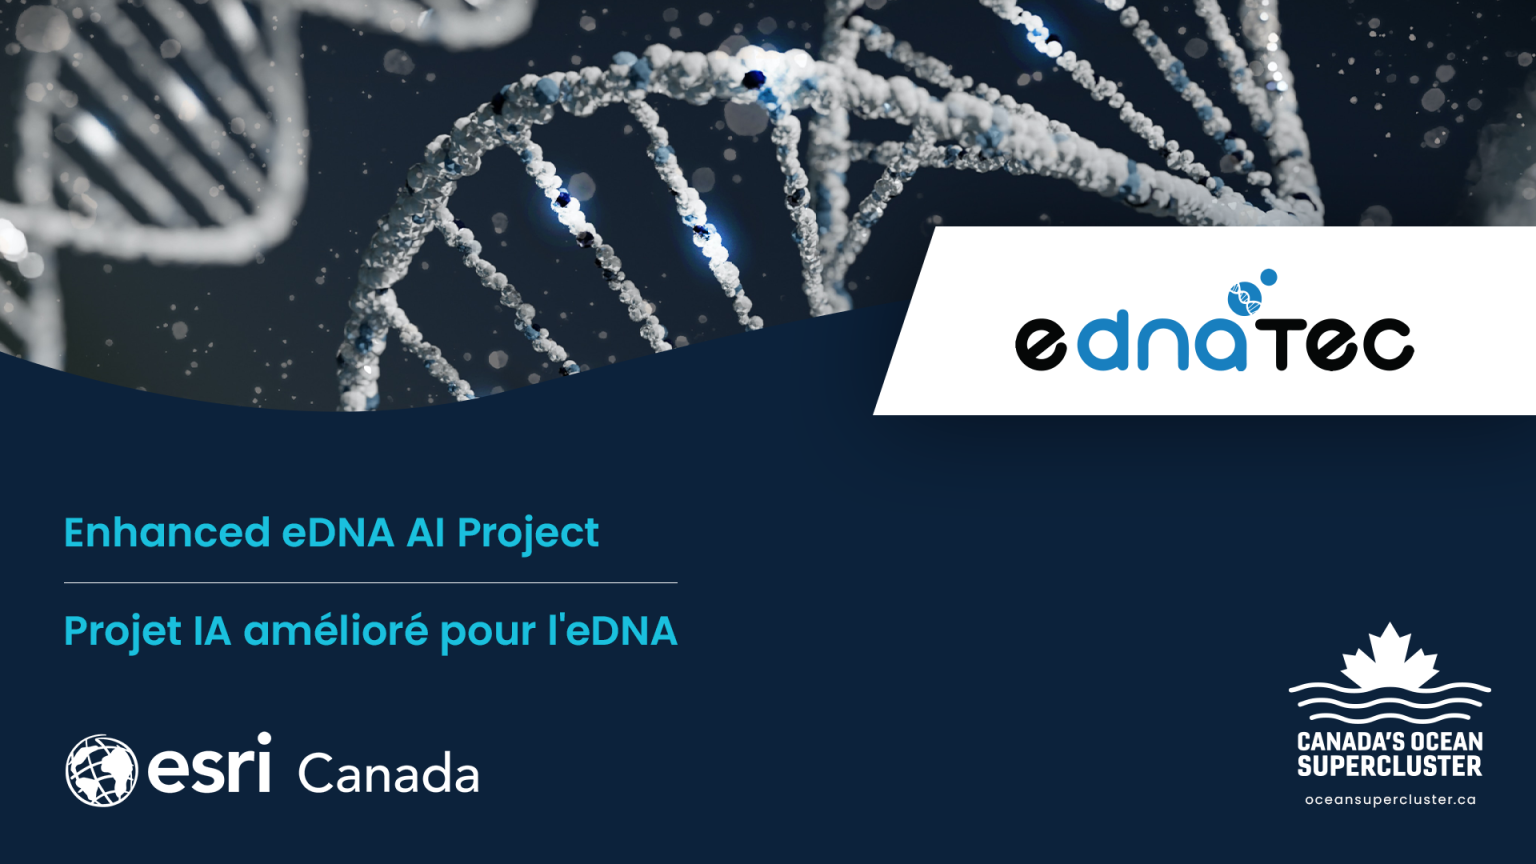 Canada’s Ocean Supercluster Announces Enhancing Environmental DNA Through AI Project